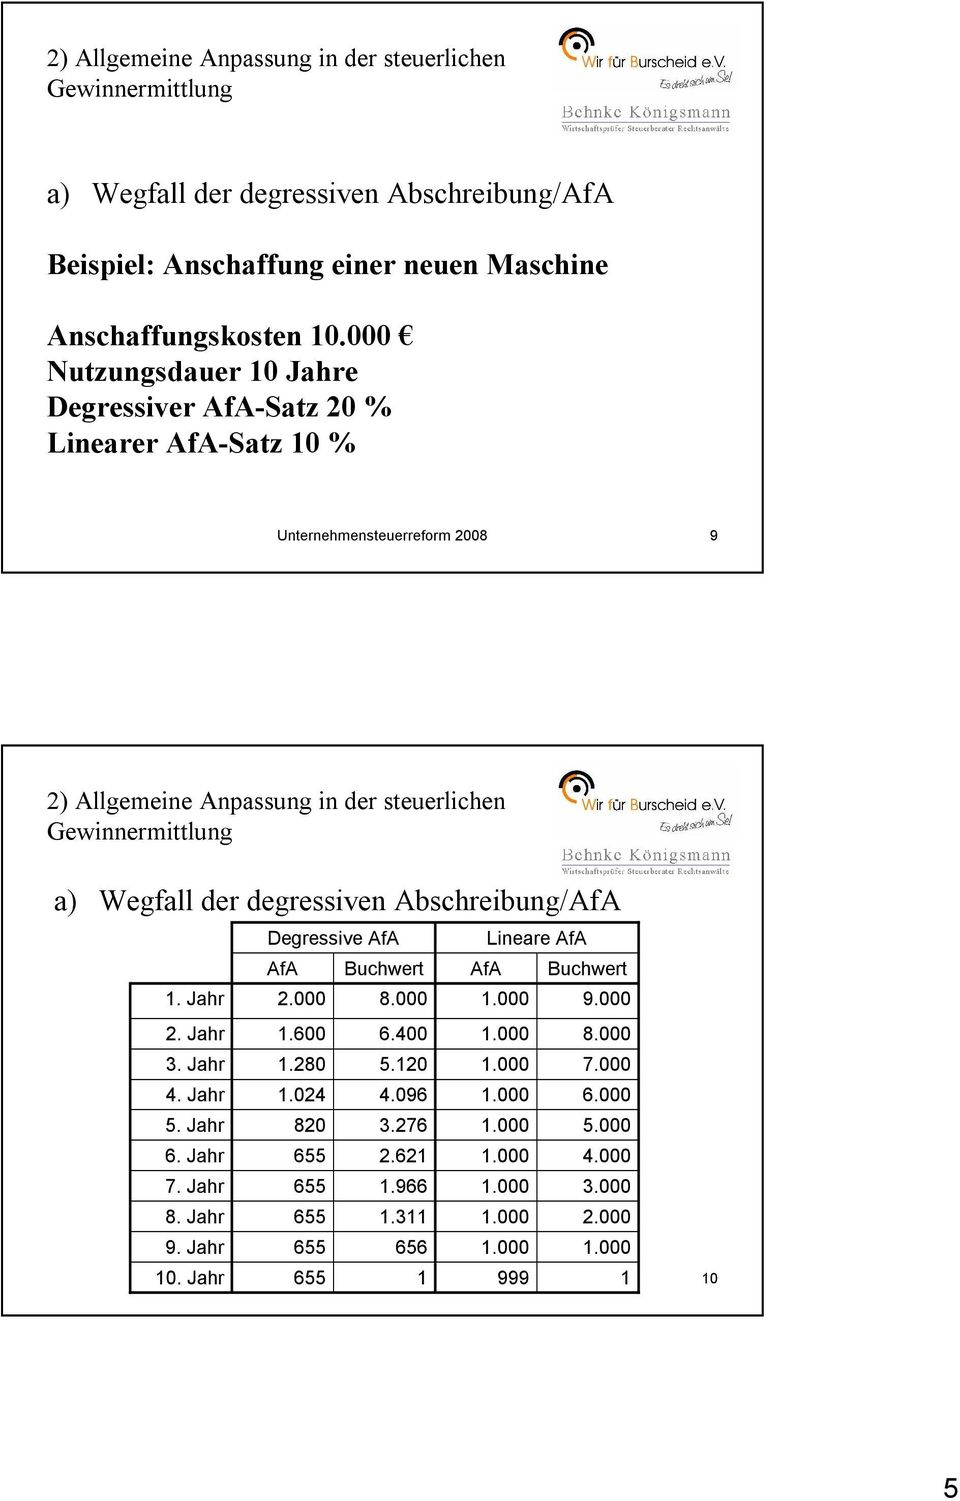 degressiven Abschreibung/AfA Degressive AfA Lineare AfA AfA Buchwert AfA Buchwert 1. Jahr 2.000 8.000 1.000 9.000 2. Jahr 1.600 6.400 1.000 8.000 3. Jahr 1.280 5.120 1.000 7.